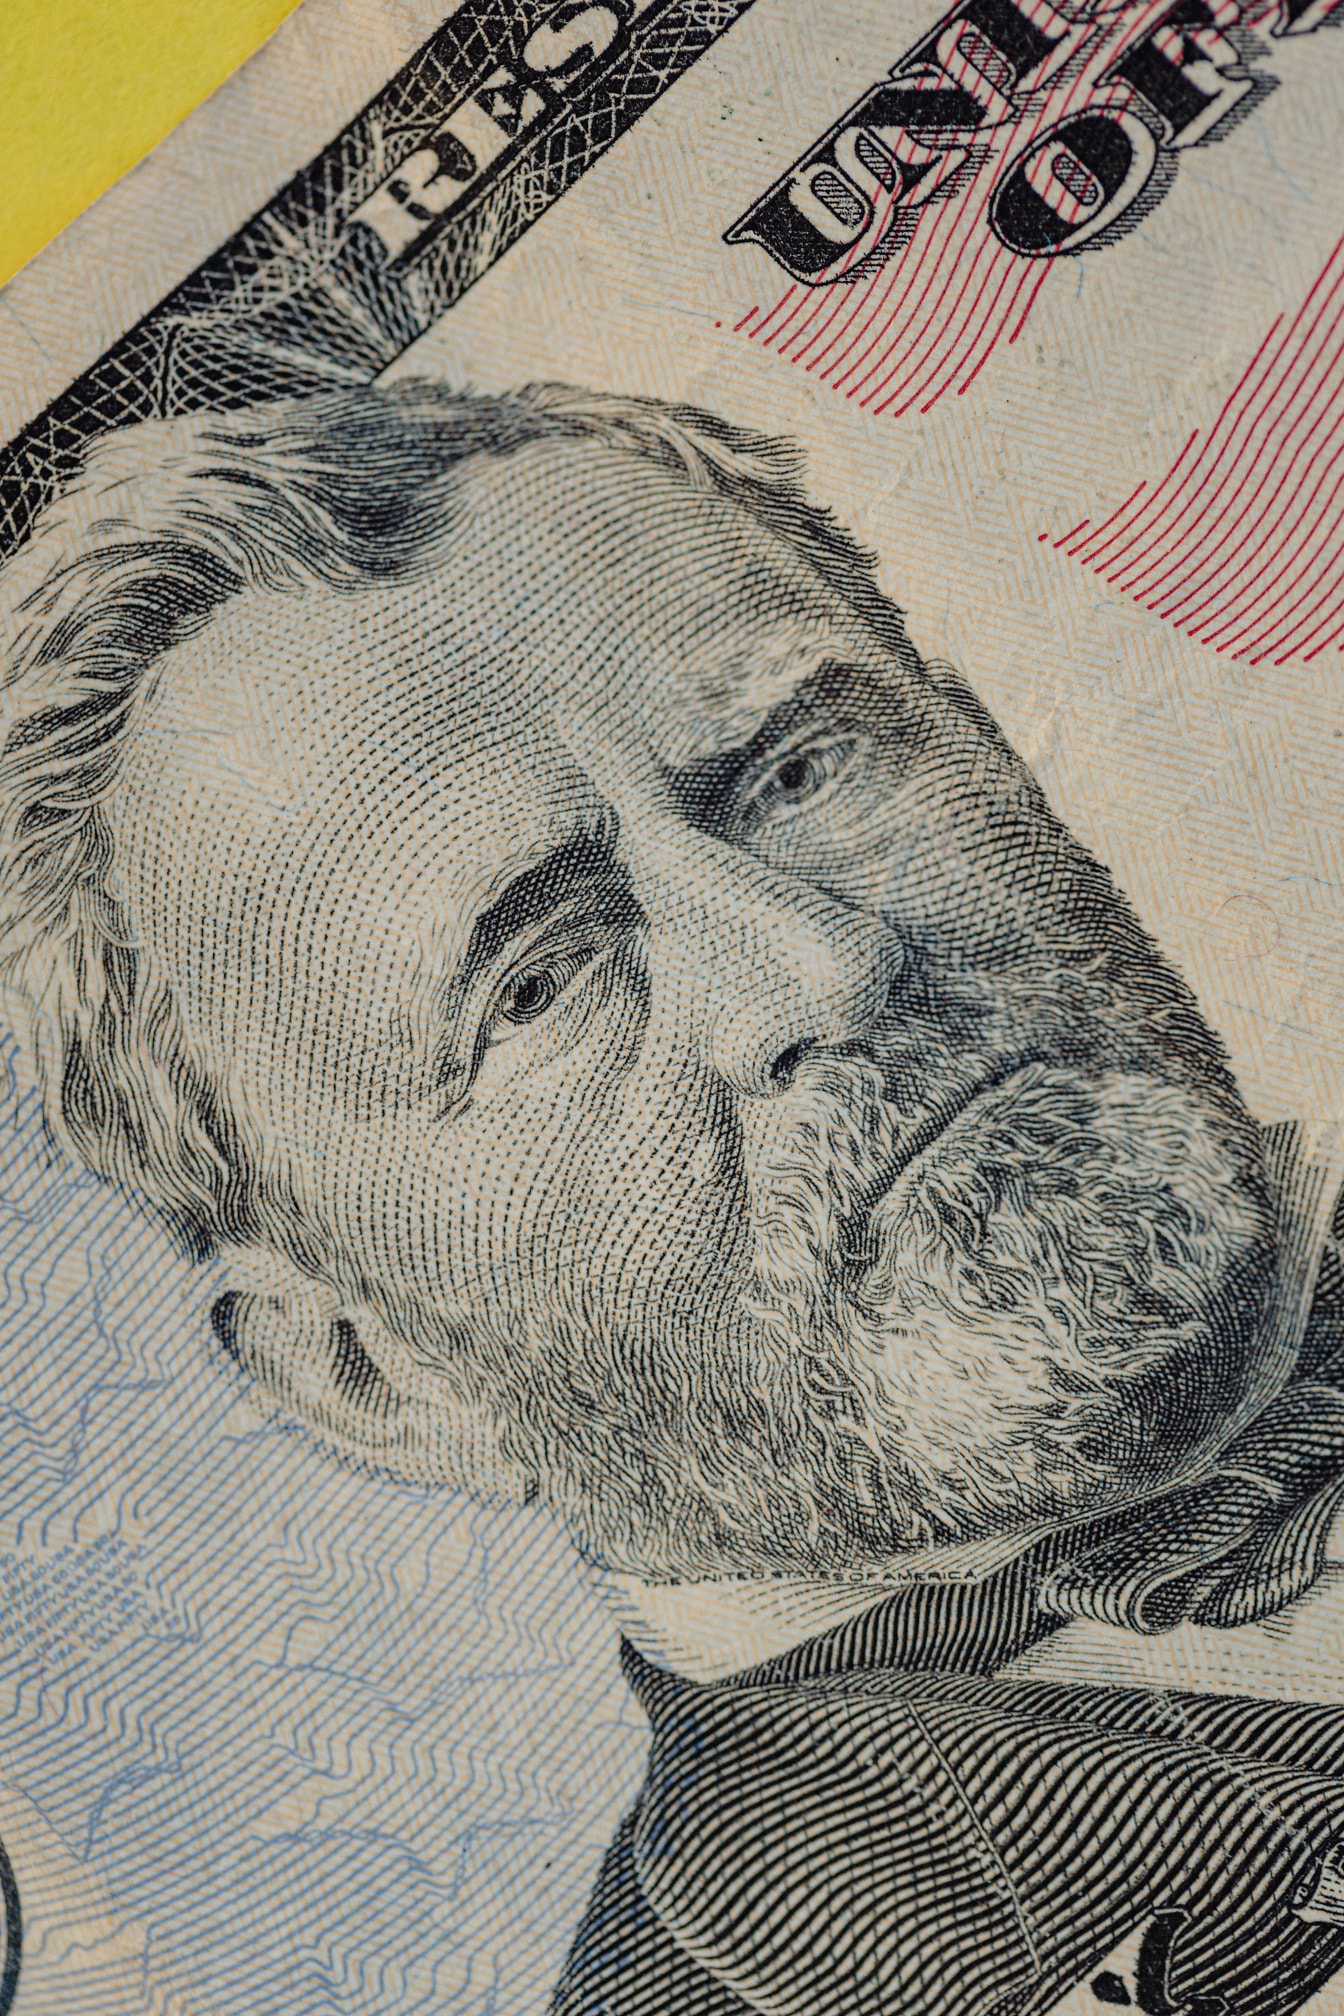 Macrofoto van het gezicht van Ulysses S. Grant op 50 dollar